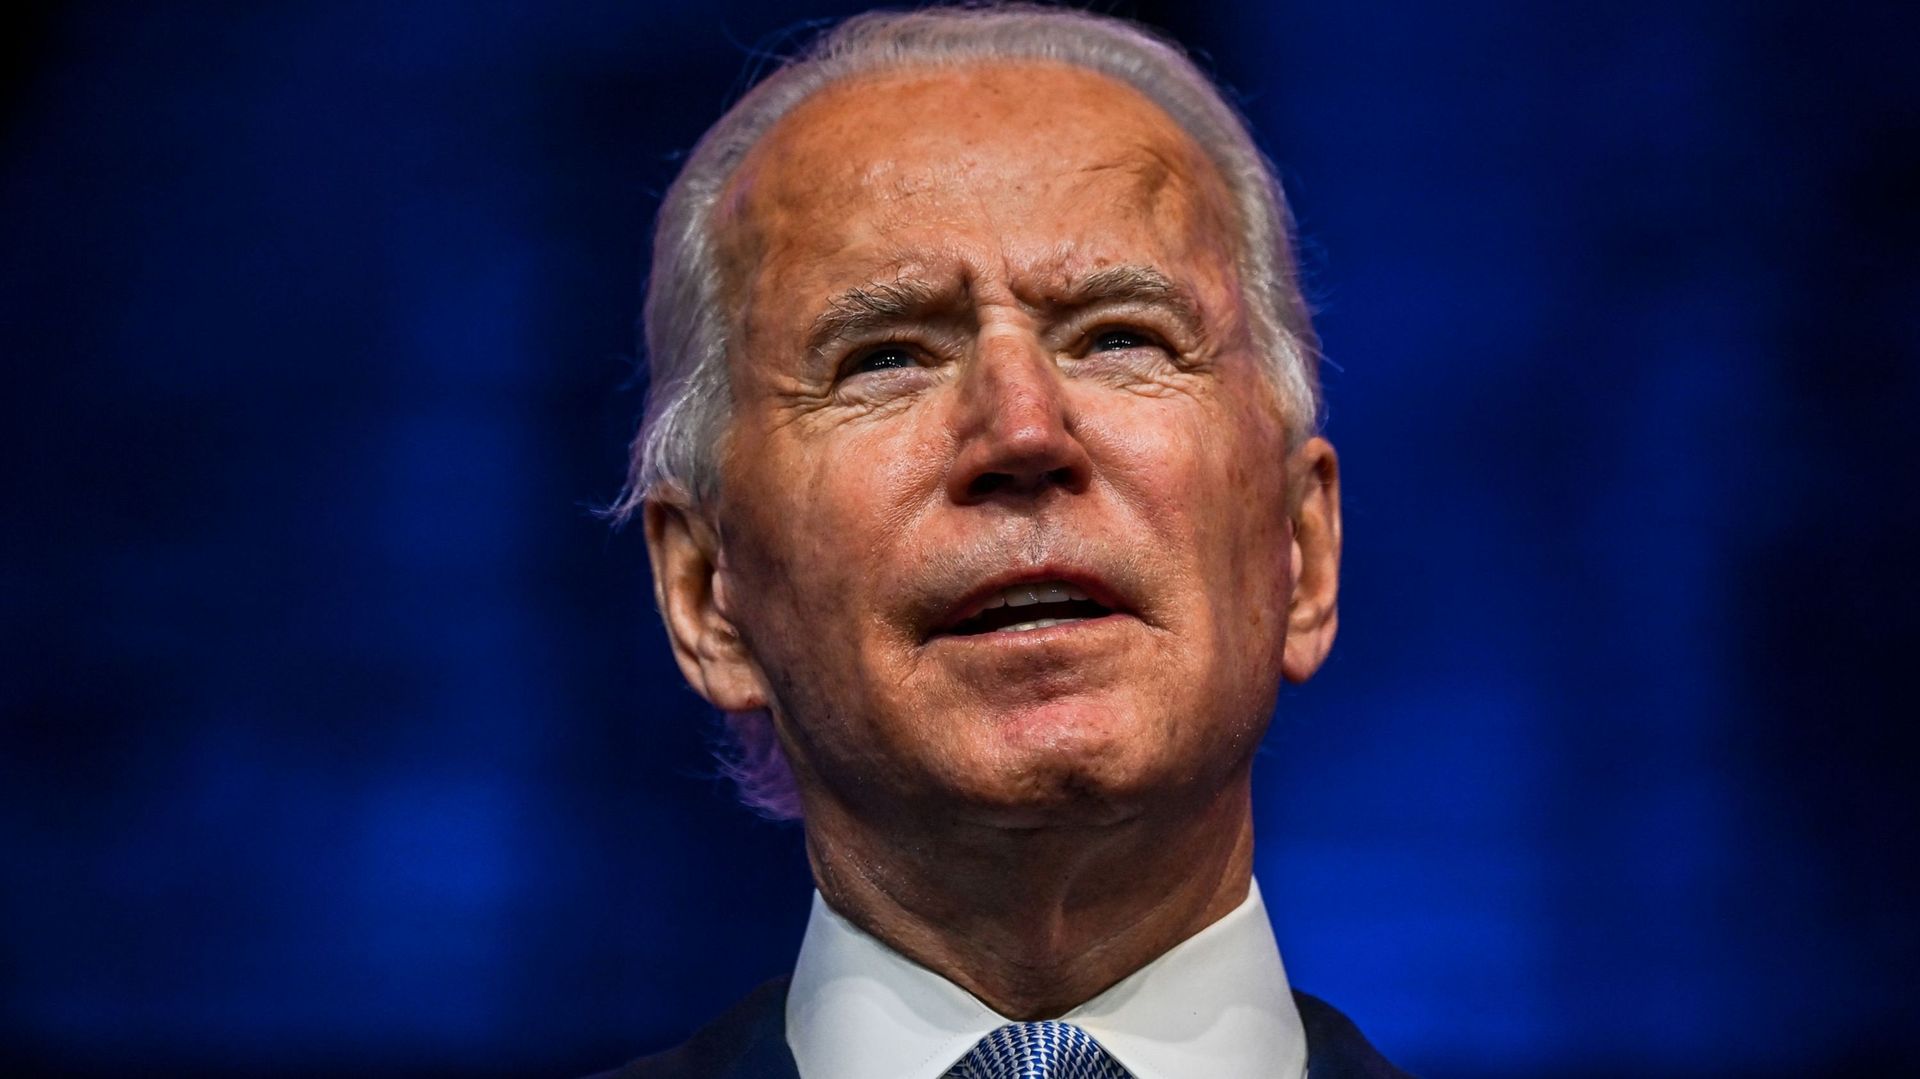 Présidentielle américaine 2020 : Joe Biden assure que les Etats-Unis sont "prêts à guider le monde"